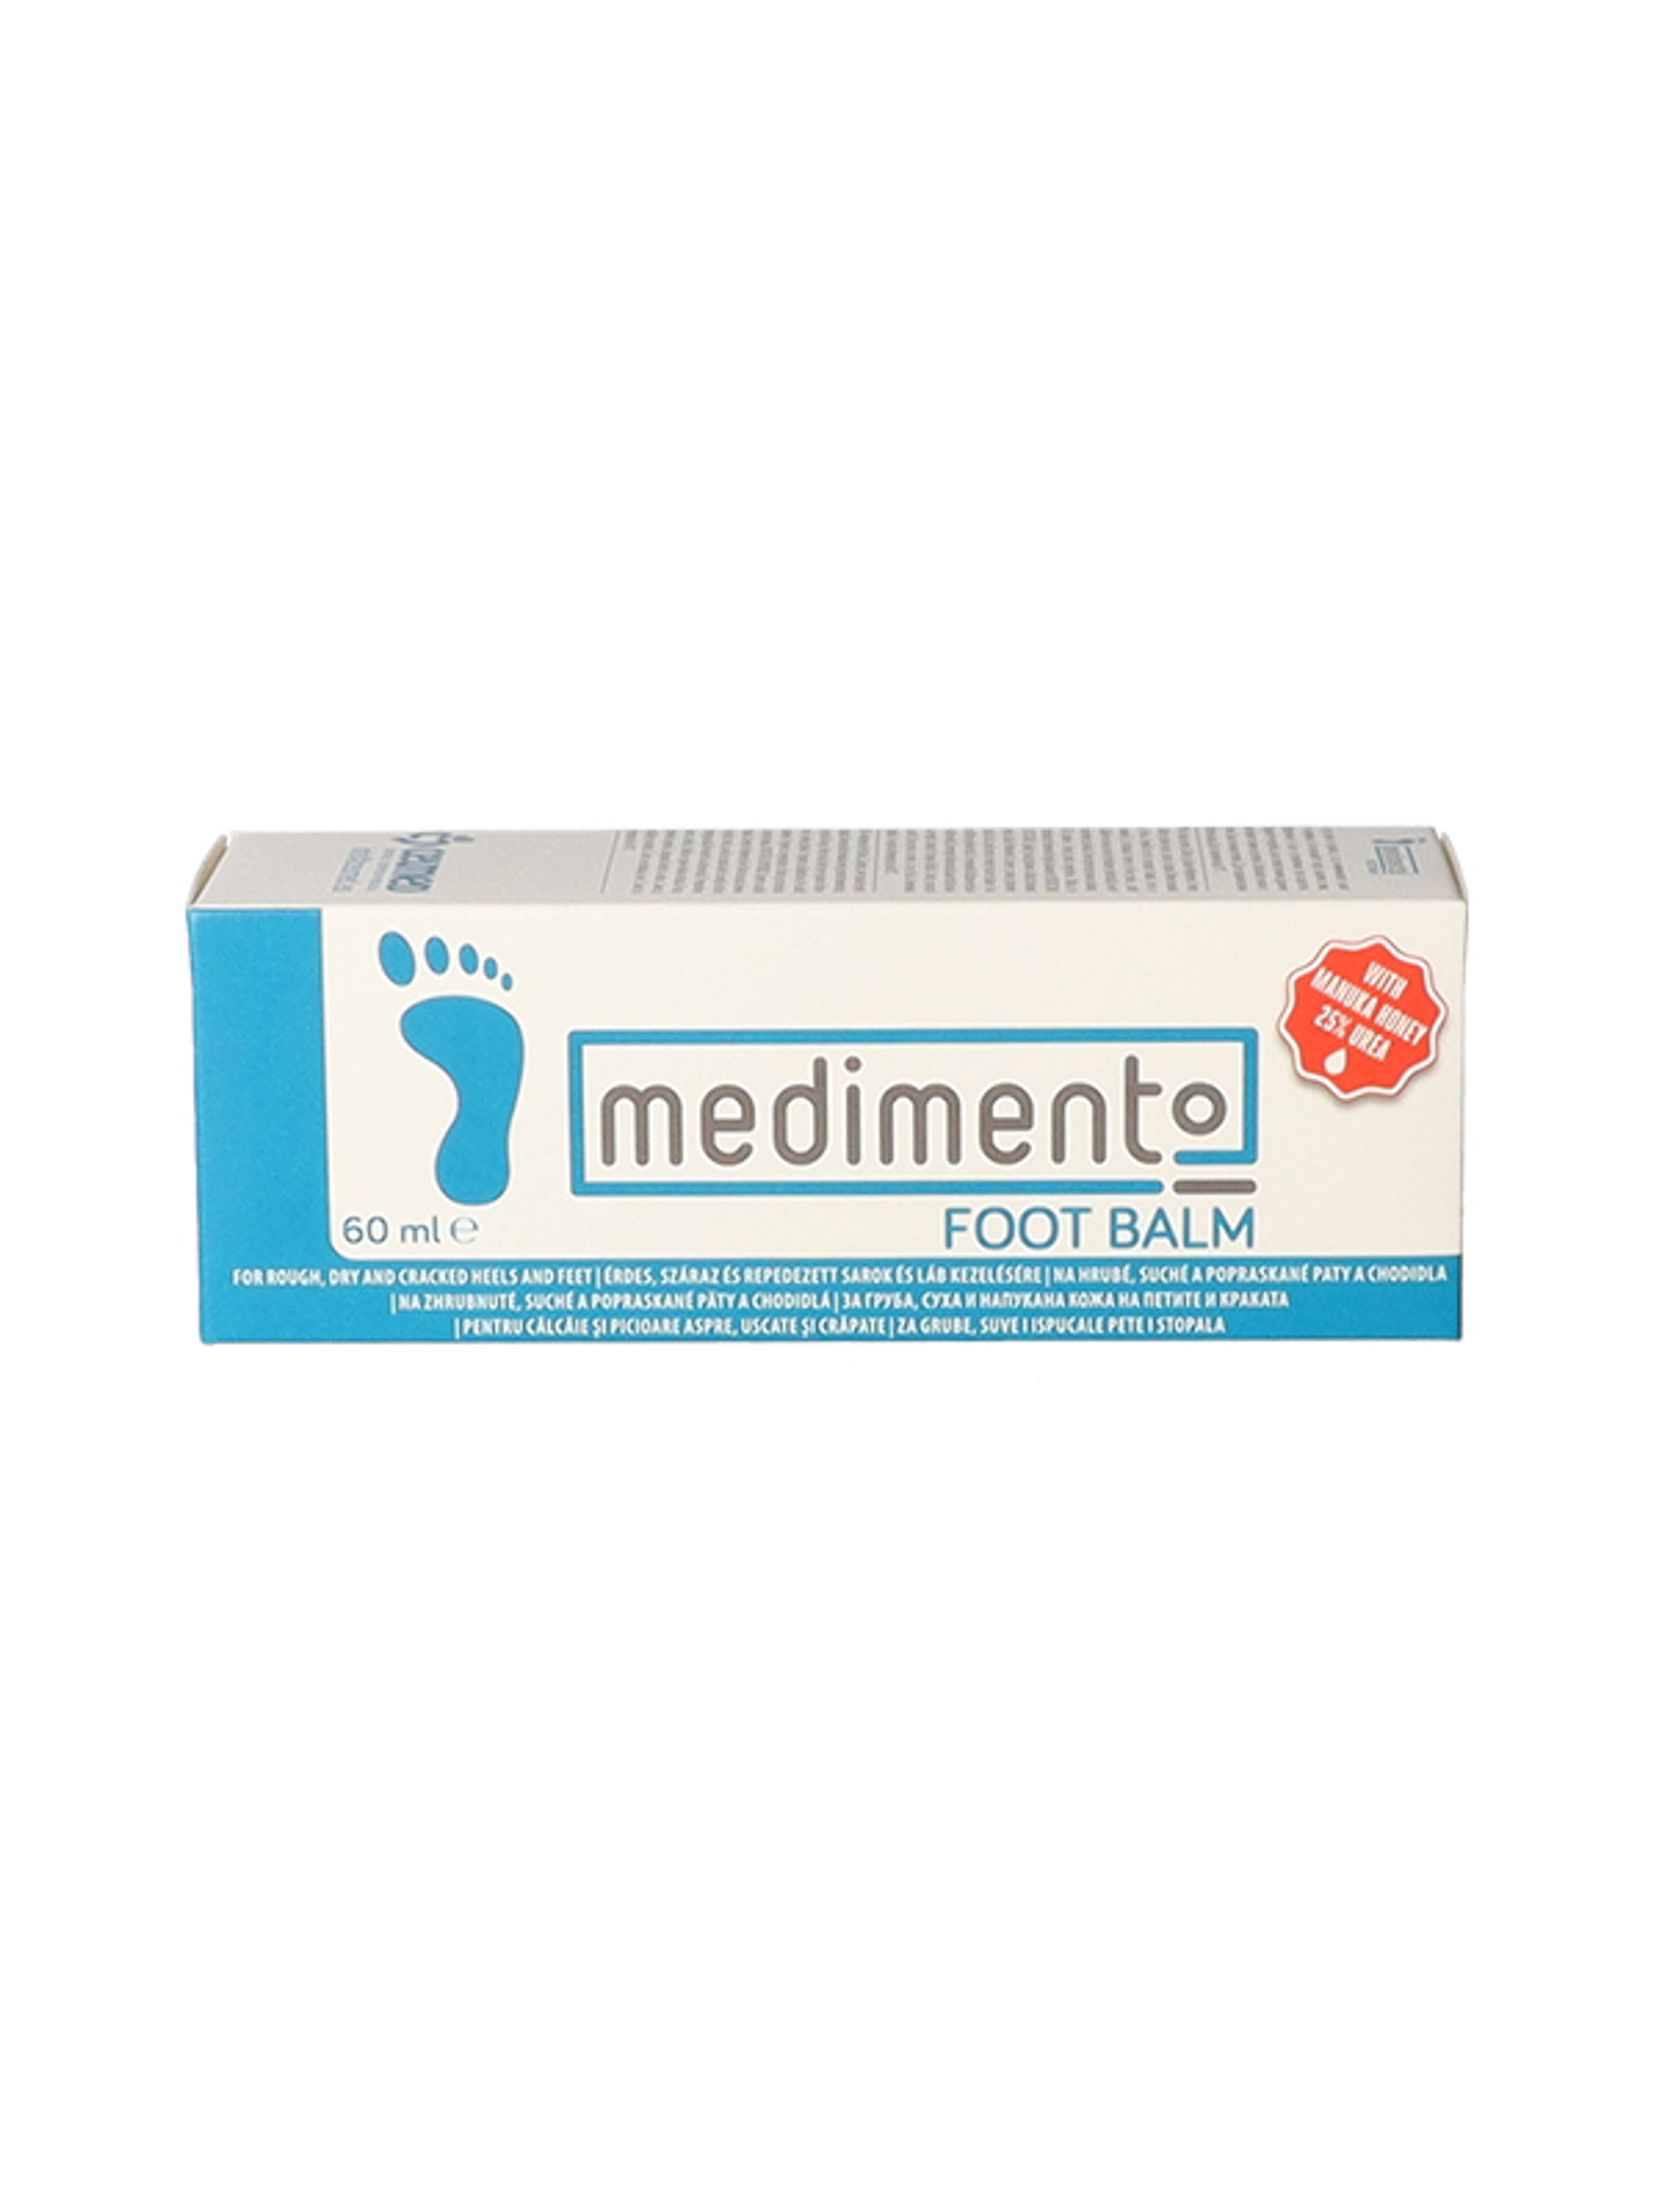 Medimento sarok és lábápoló krém - 60 ml